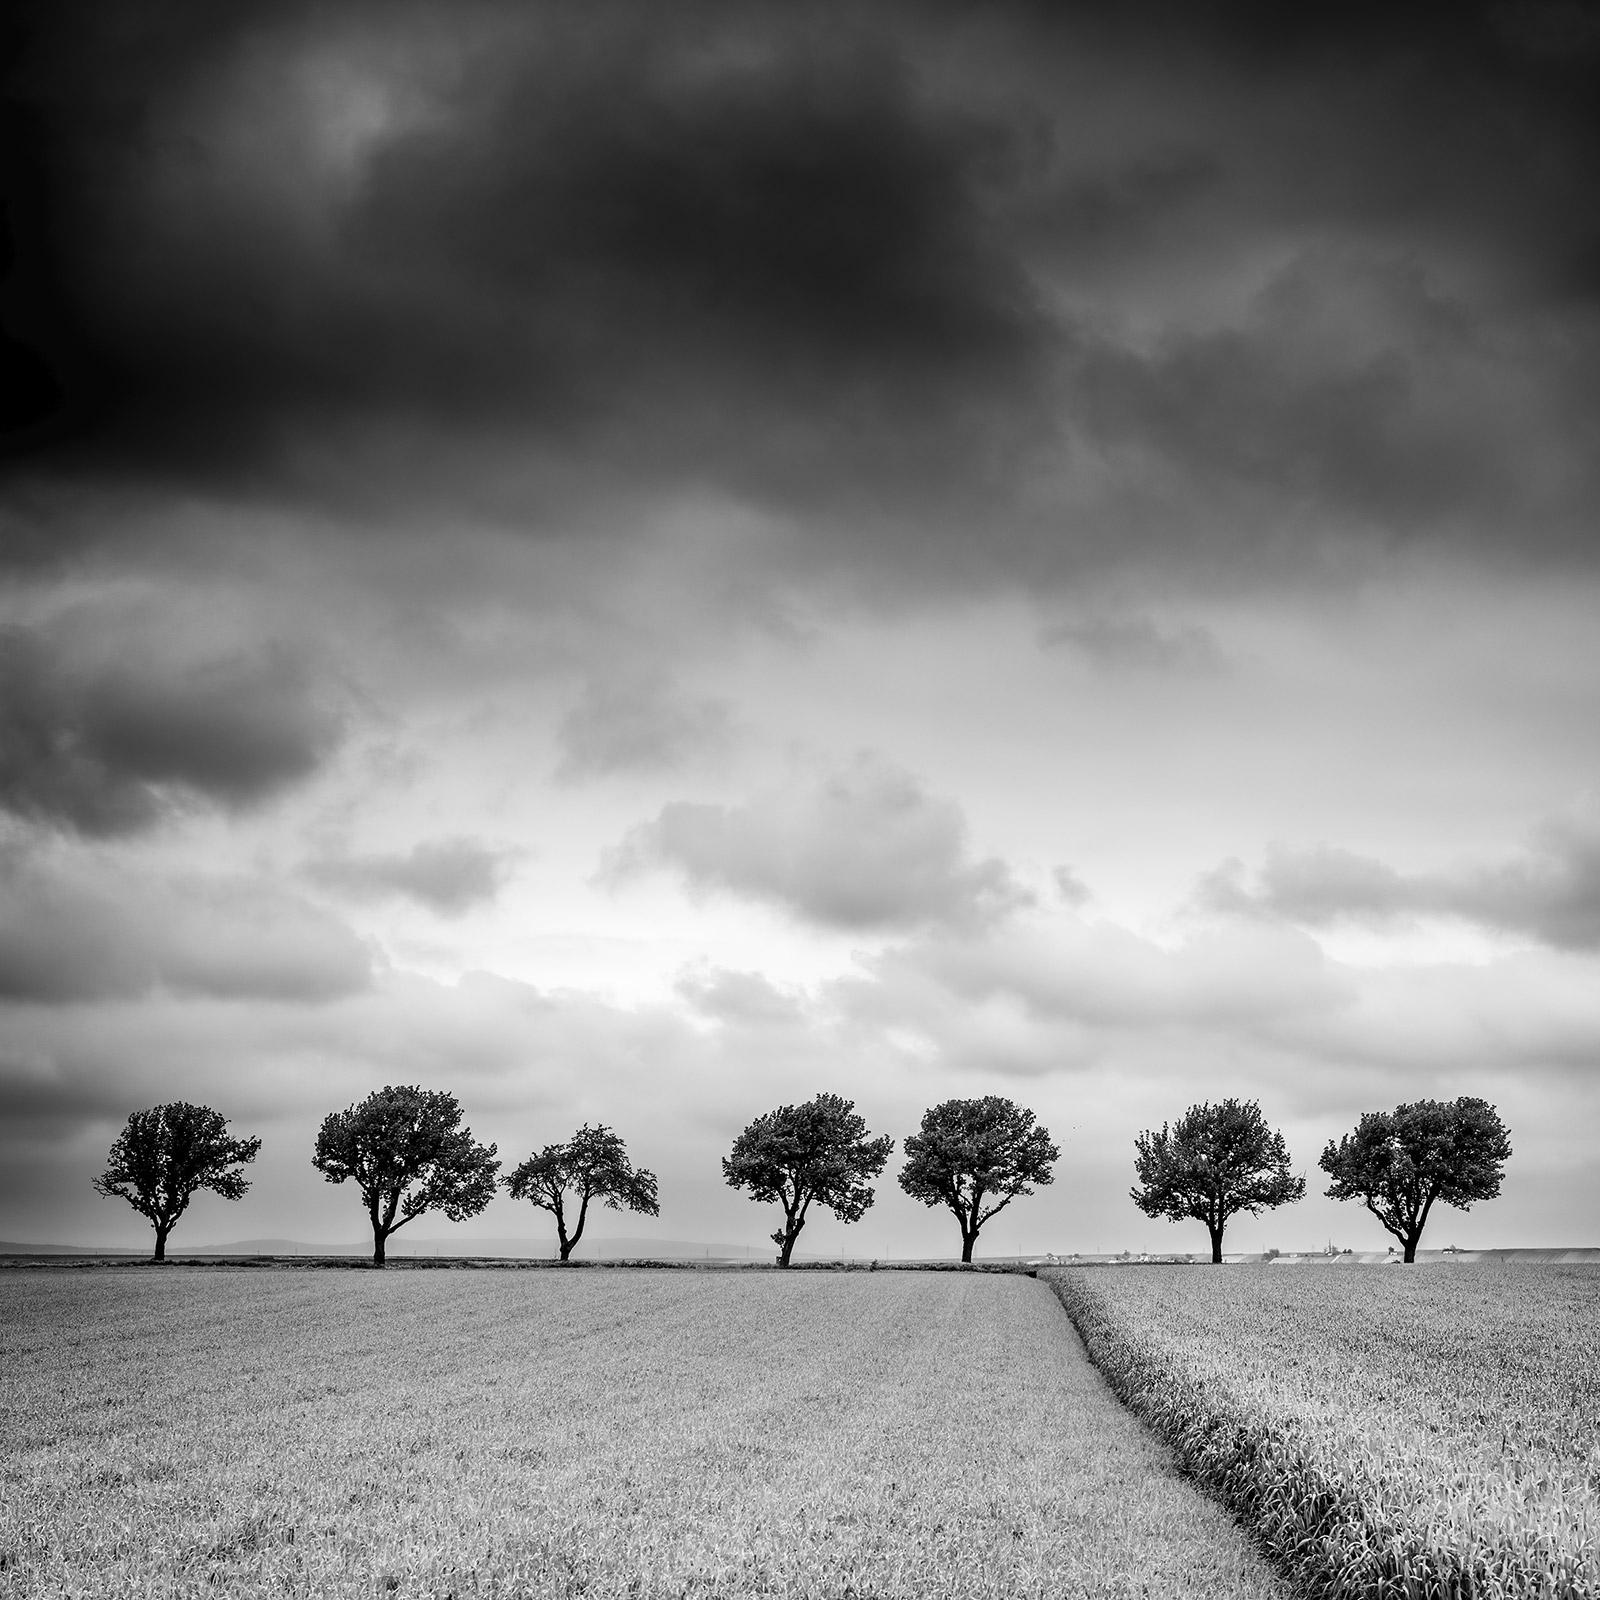 Bäume am Rande des Feldes, Wolken, Gewitter, Sturm, Schwarz-Weiß-Kunstlandschaftsfotografie